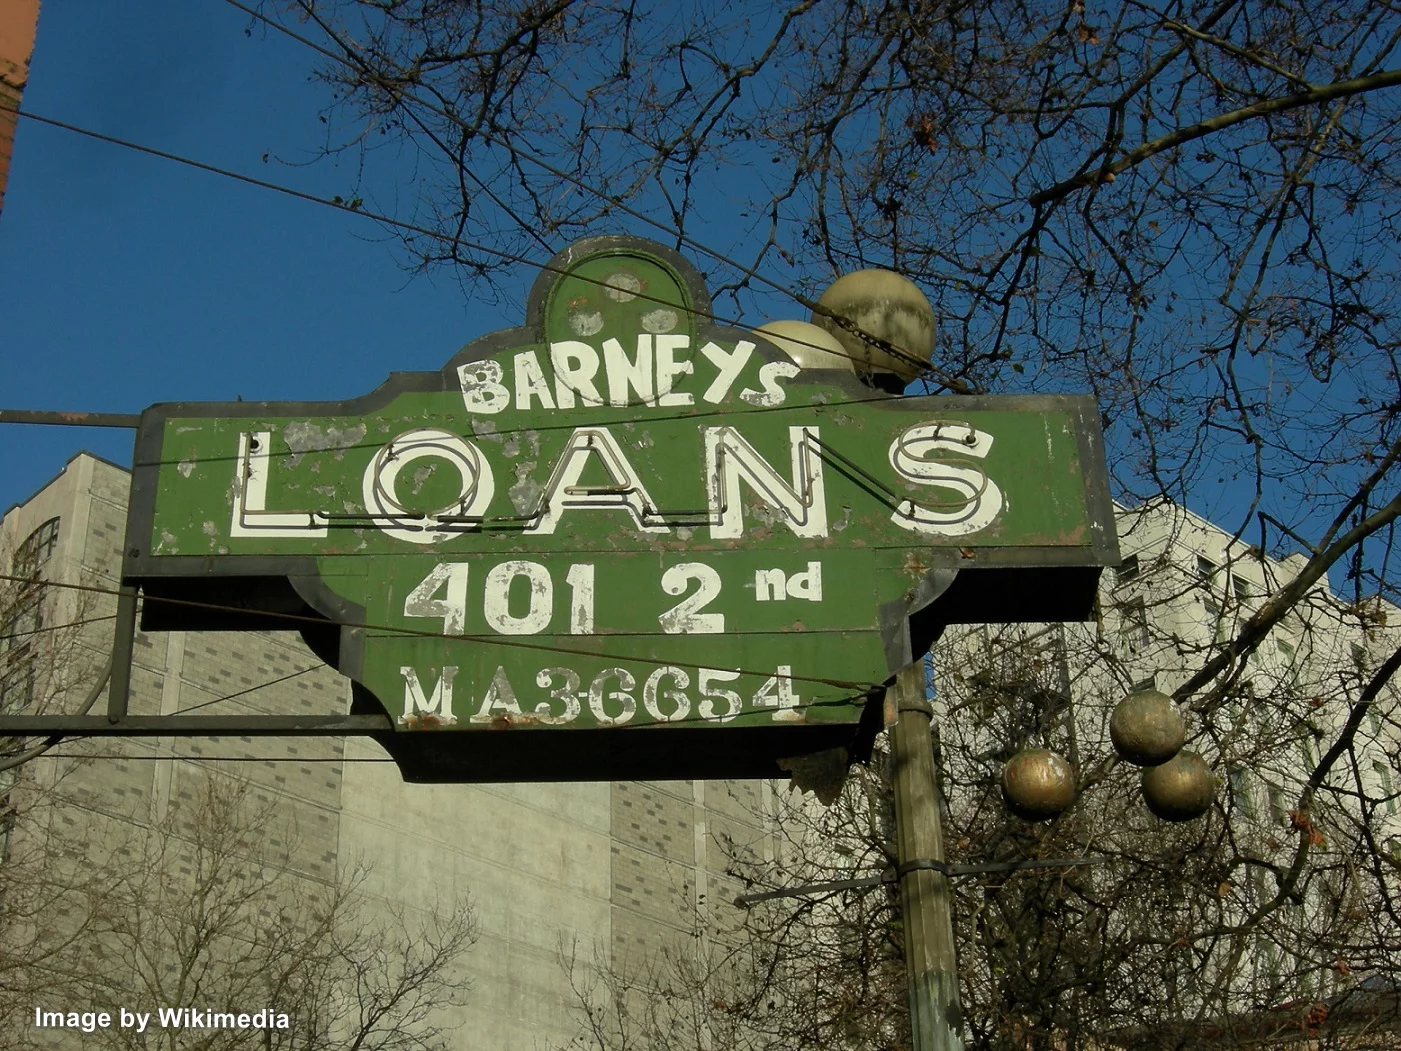 loans-signboard-by-wikimedia